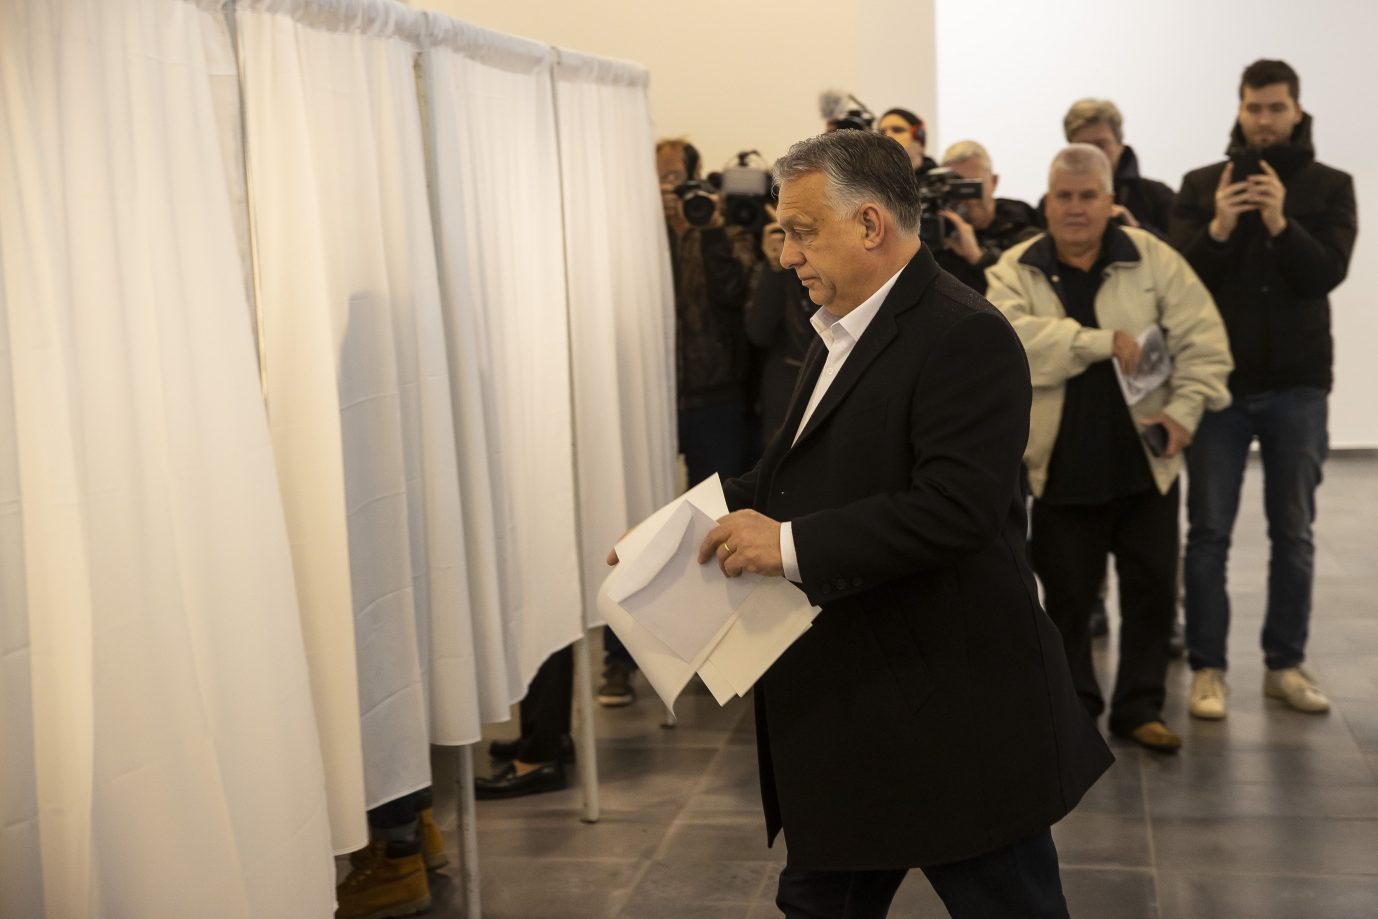 Orbán bei der Stimmabgabe: Erfolgreiche Inszenierung als Partei des Friedens Foto: picture alliance / AA | Arpad Kurucz